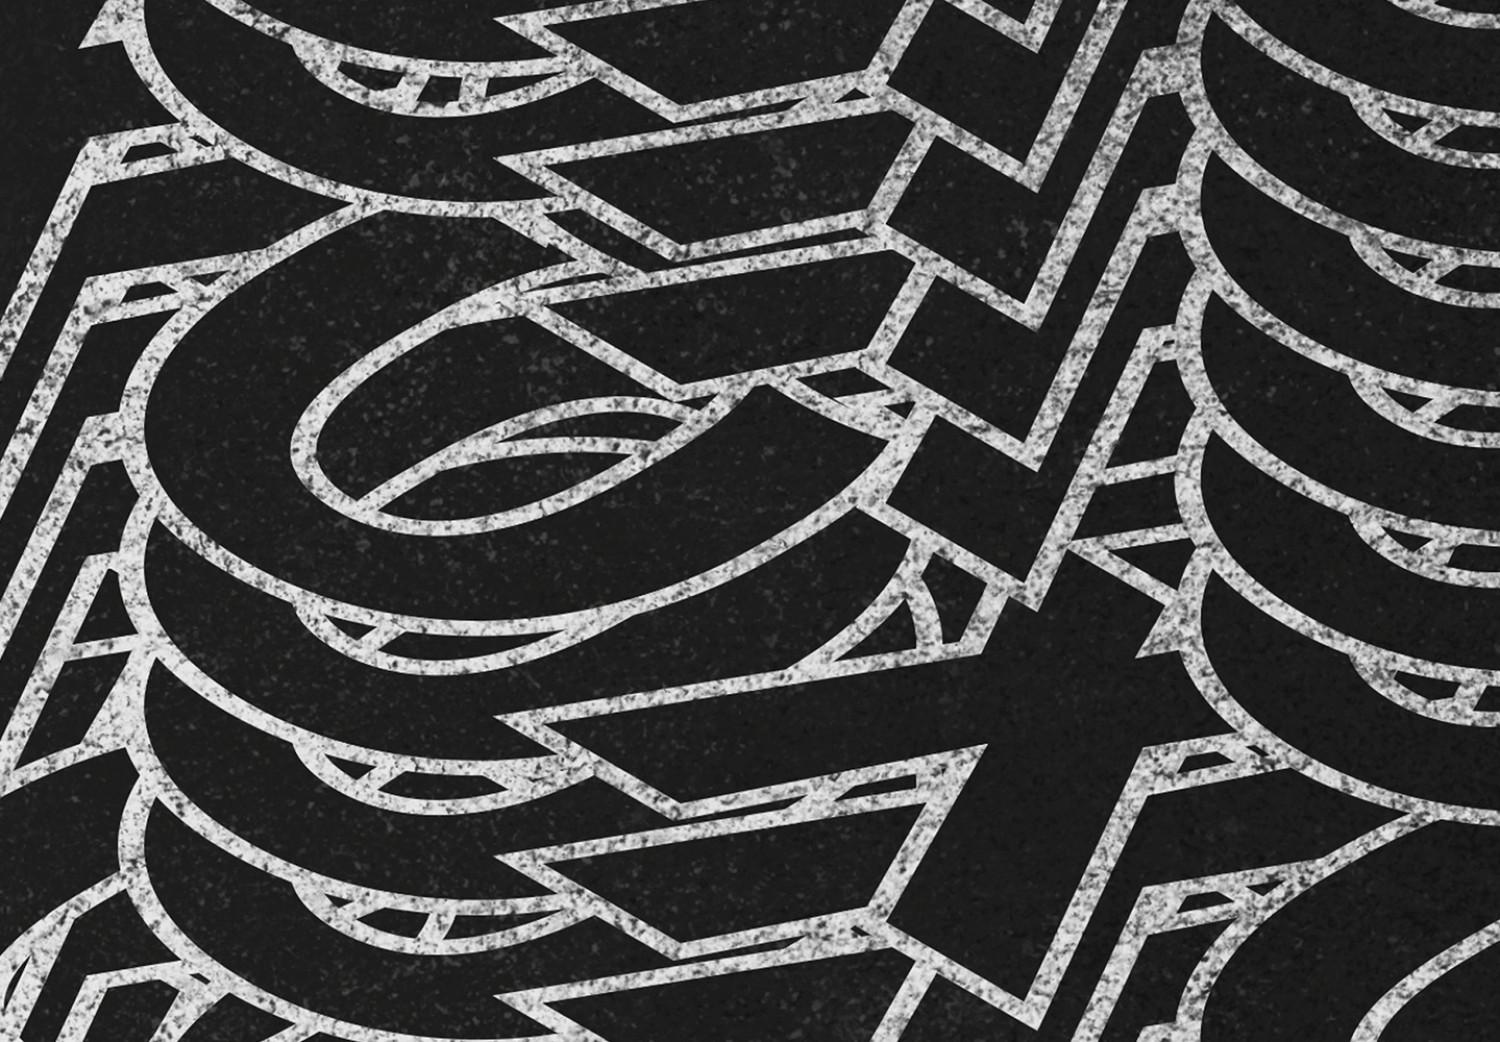 Cuadro moderno XO tridimensional - inscripción de dos letras, en blanco y negro